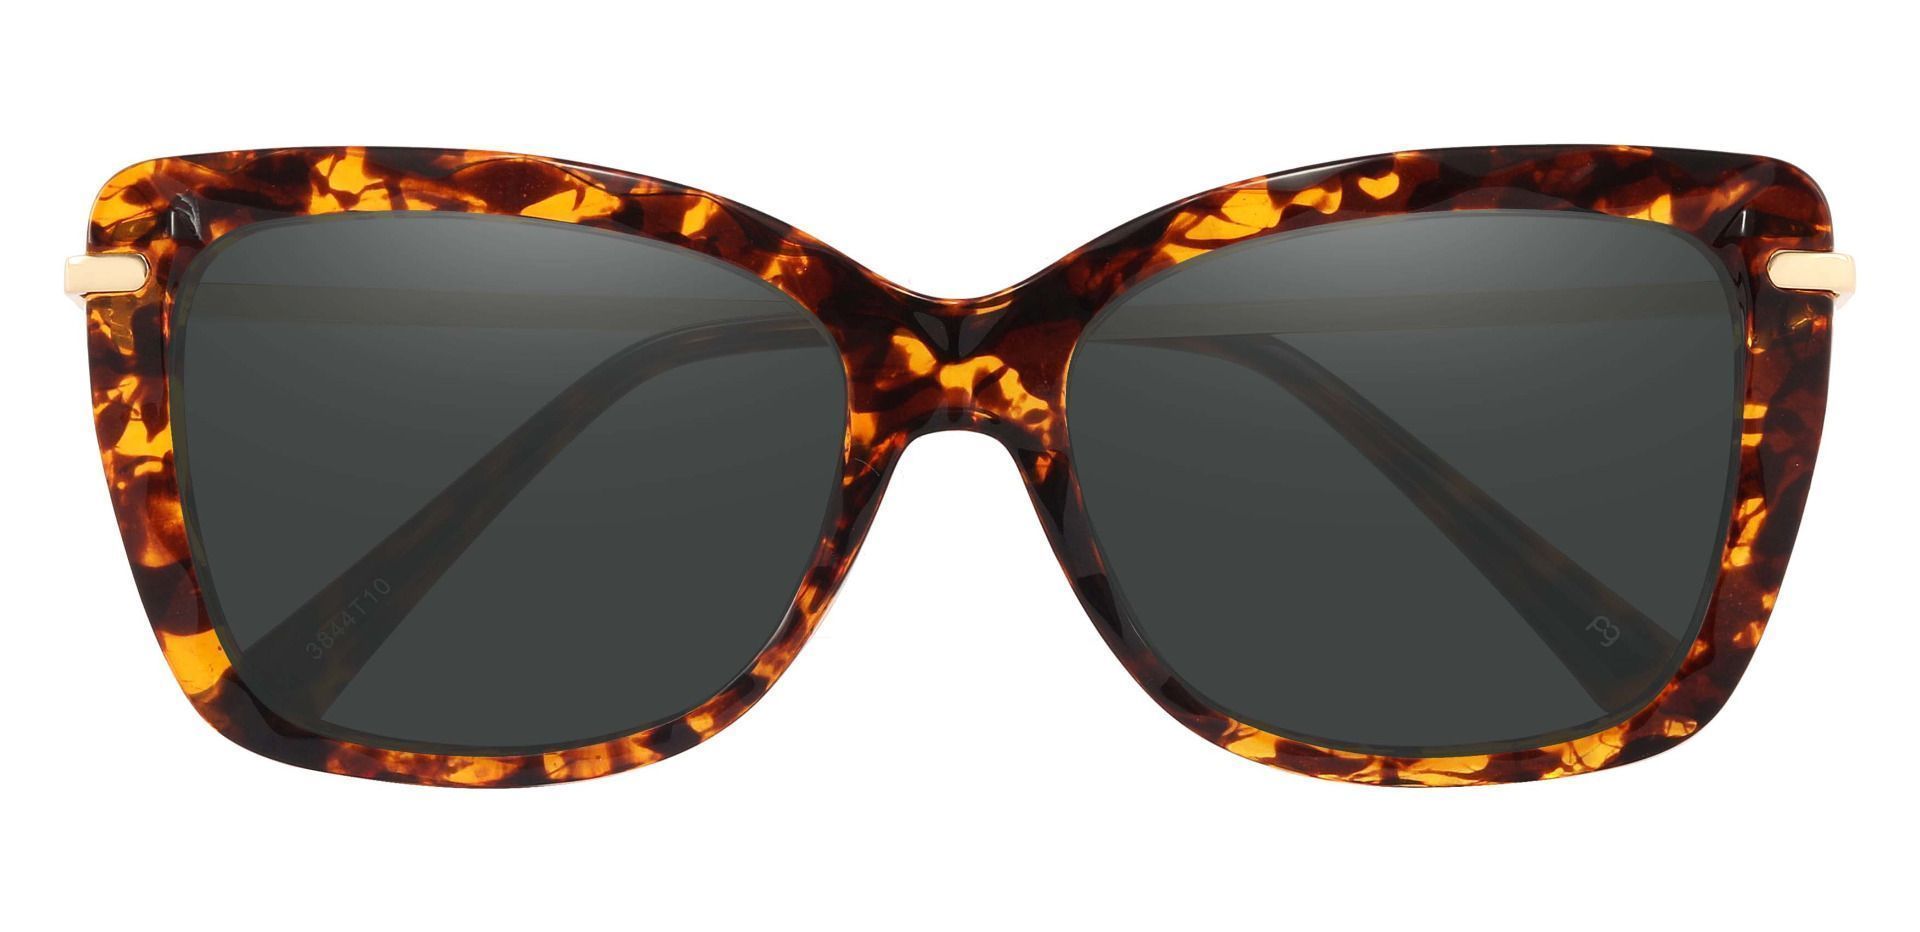 Shoshanna Rectangle Reading Sunglasses - Tortoise Frame With Gray Lenses